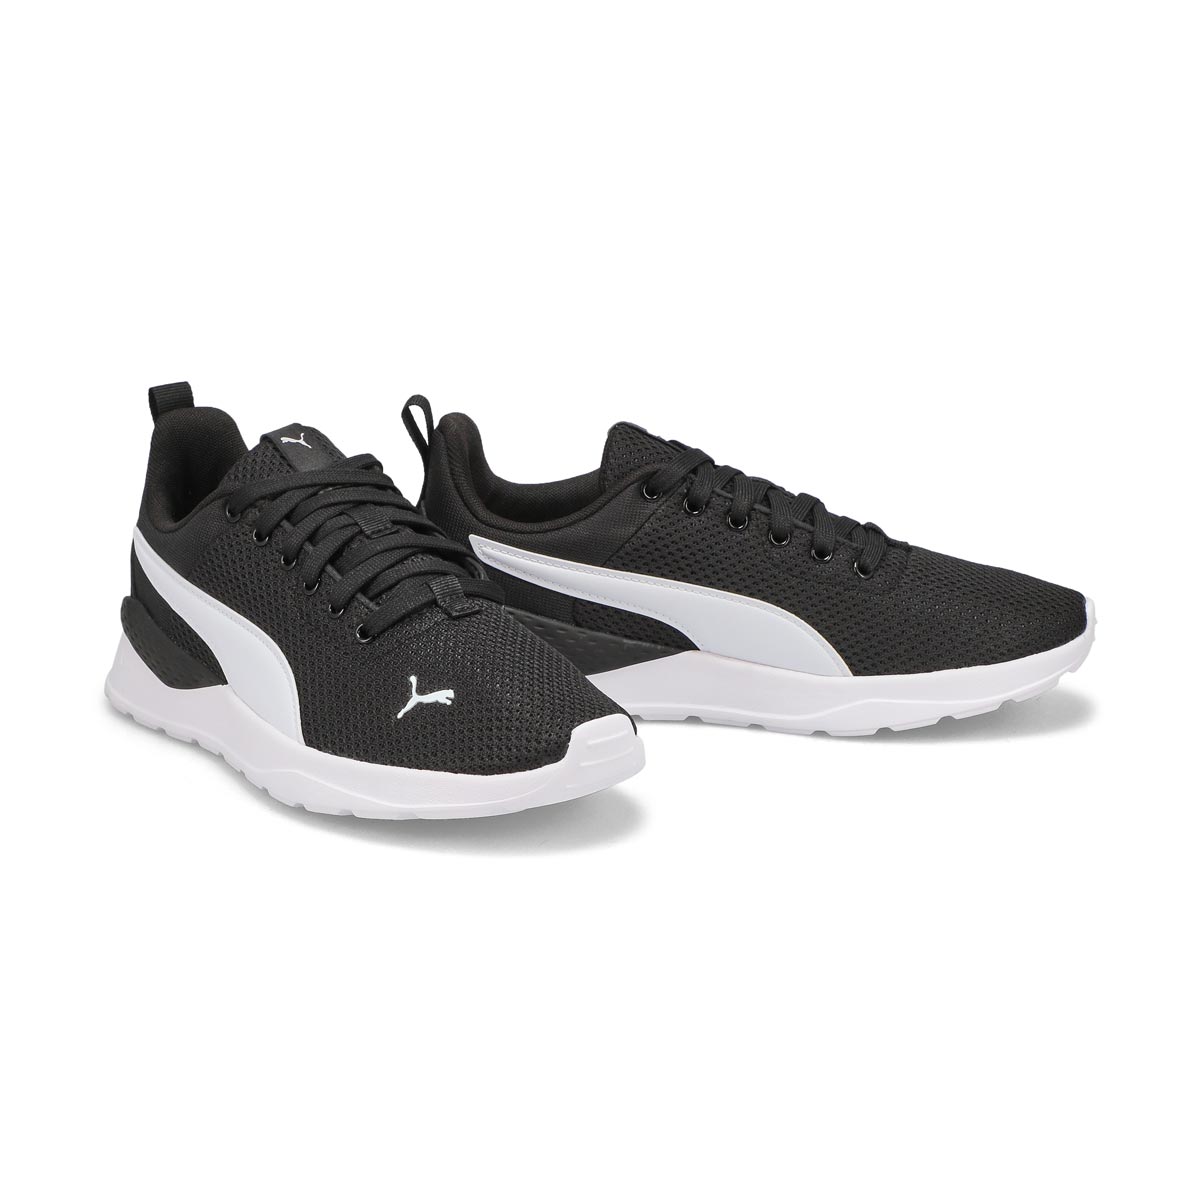 Boys' Anzarun Lite Sneaker - Black/White